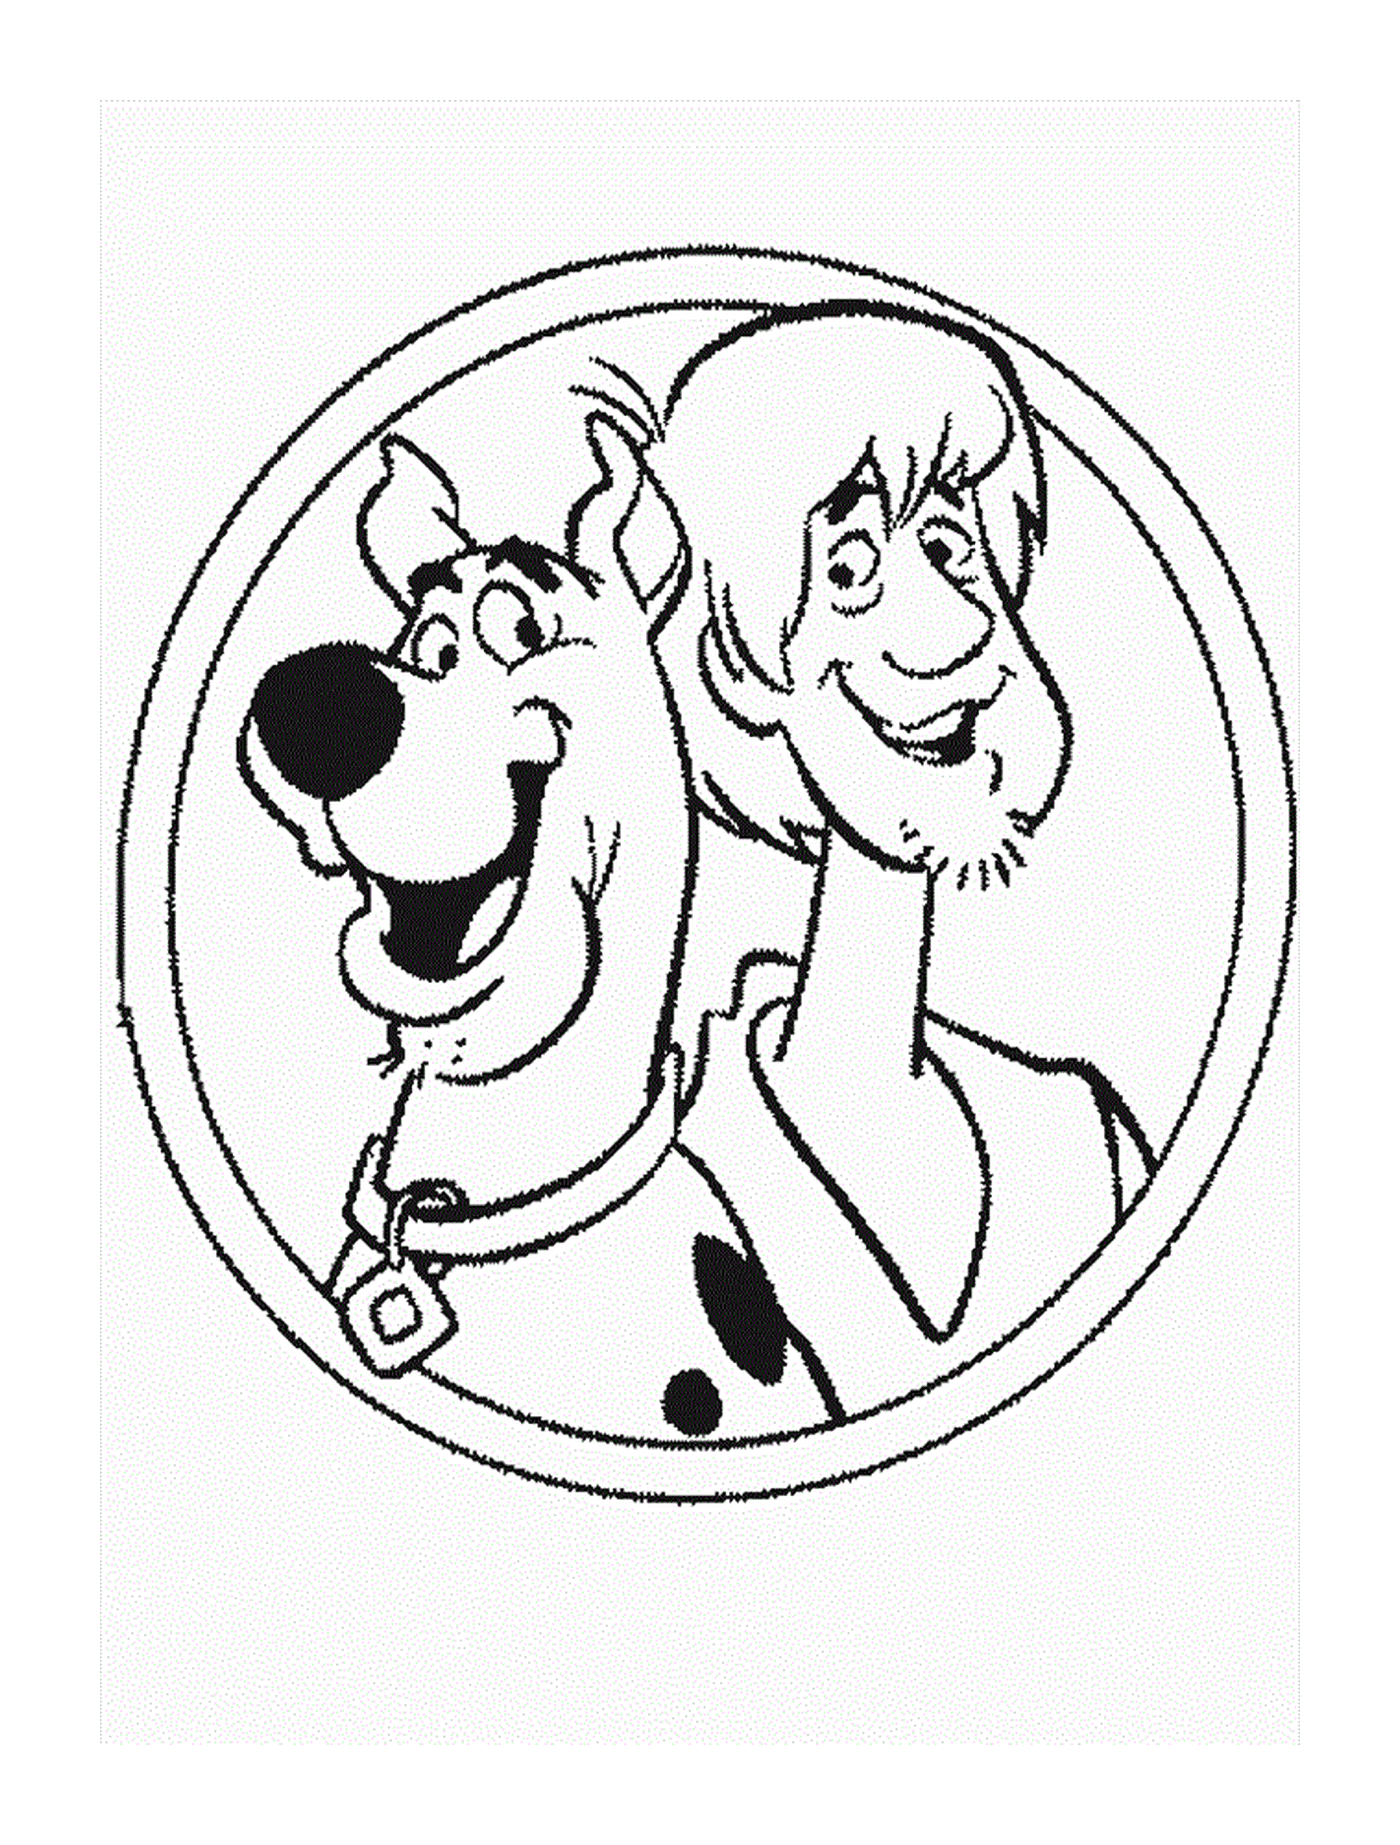  Shaggy e Scooby-Doo 